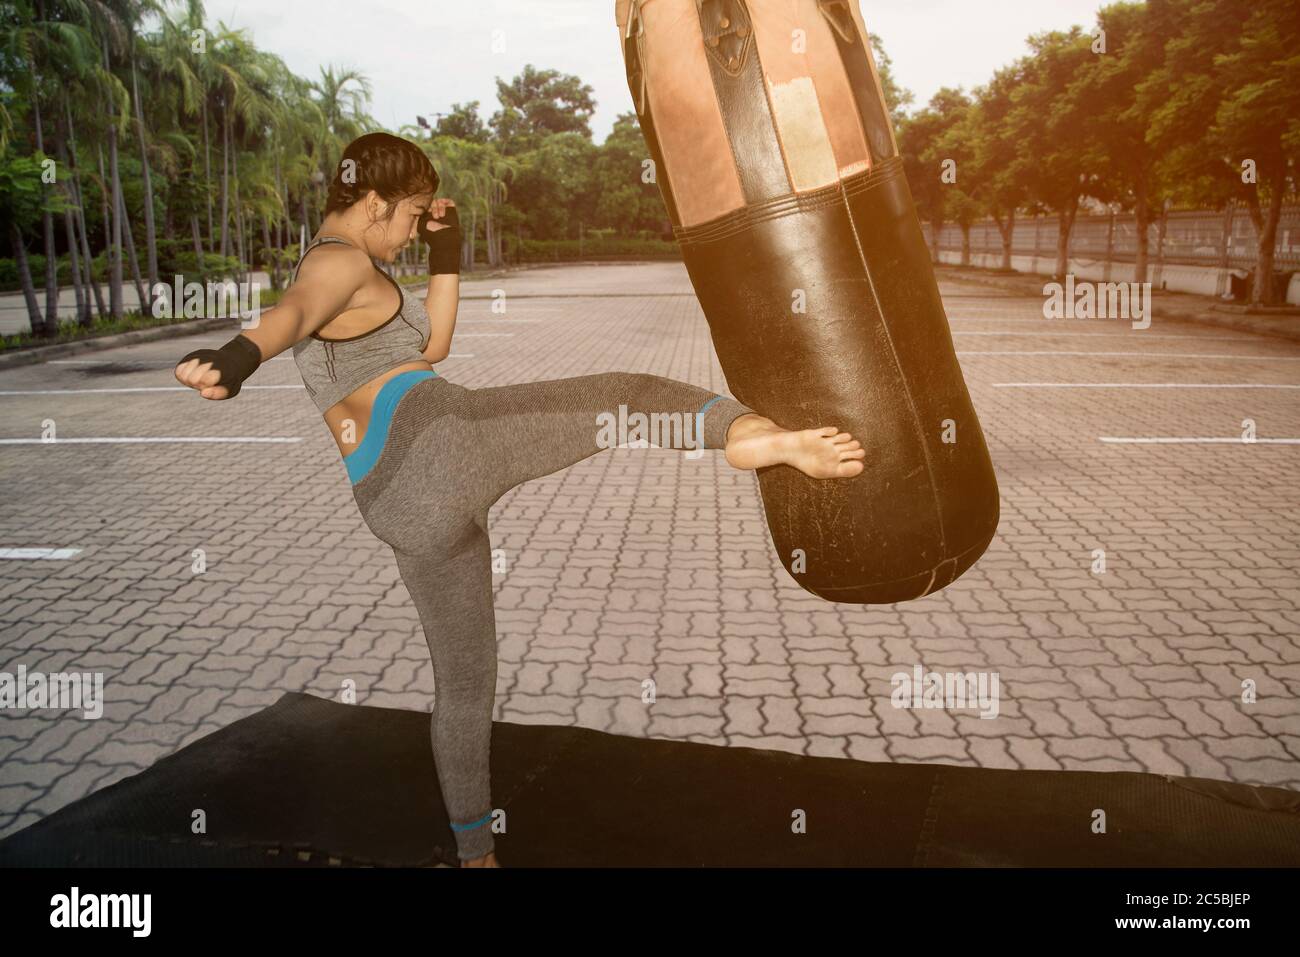 Hermosa niña blanca asiática joven con pelo largo de 20-30 años de edad. Práctica Muay Thai boxing pateando en el Boxing Sandbag en el parque. Foto de stock